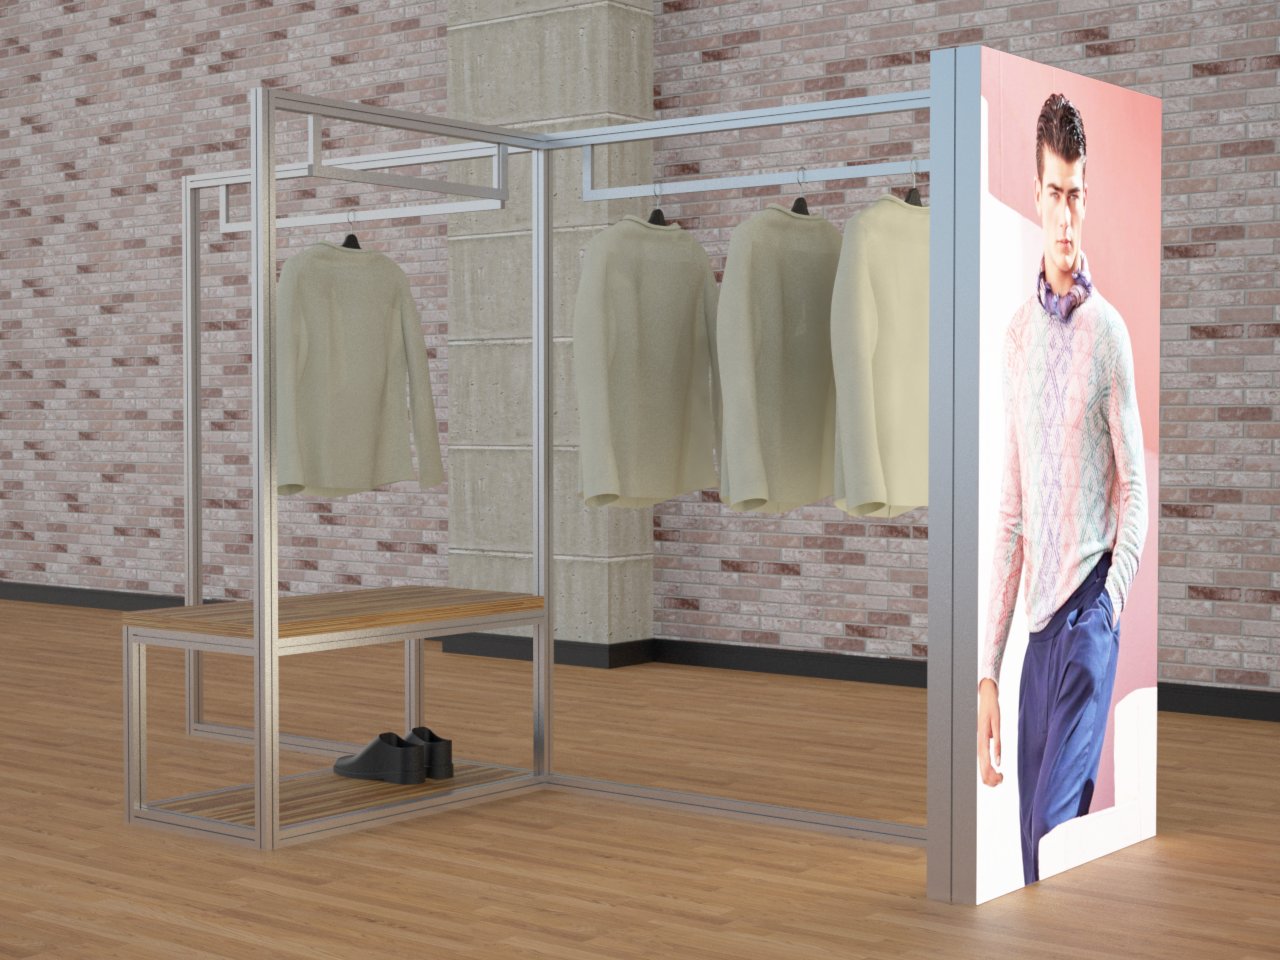 Mobiliário para loja em alumínio com araras para roupas e painel backlight com LEDs e imagem em tecido impresso